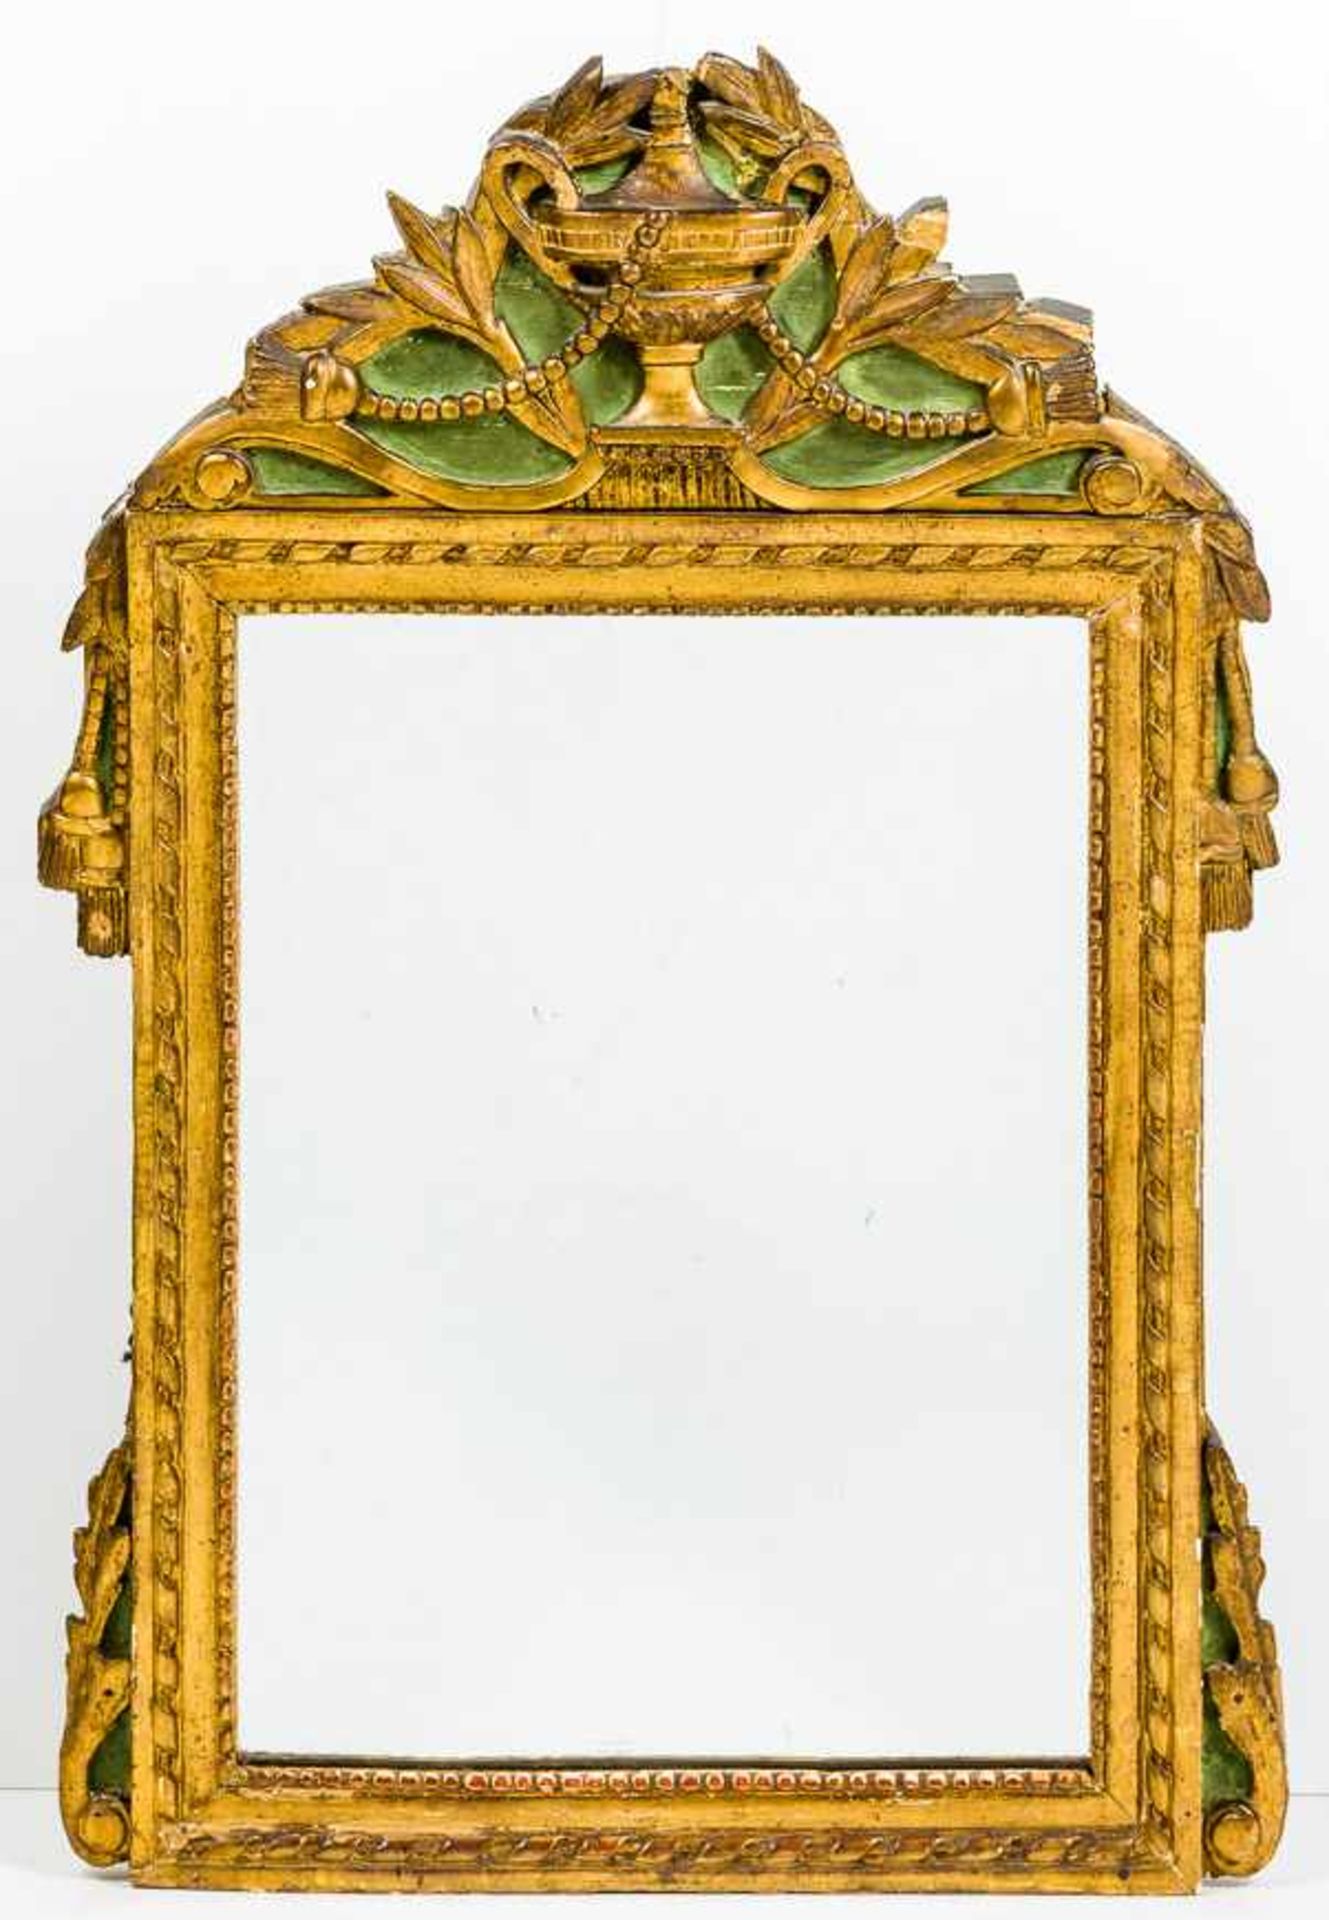 Kleiner Spiegel im Louis-XVI-StilE. 19. Jh.Holz, geschnitzt, Stuckauflage, vergoldet, partiell